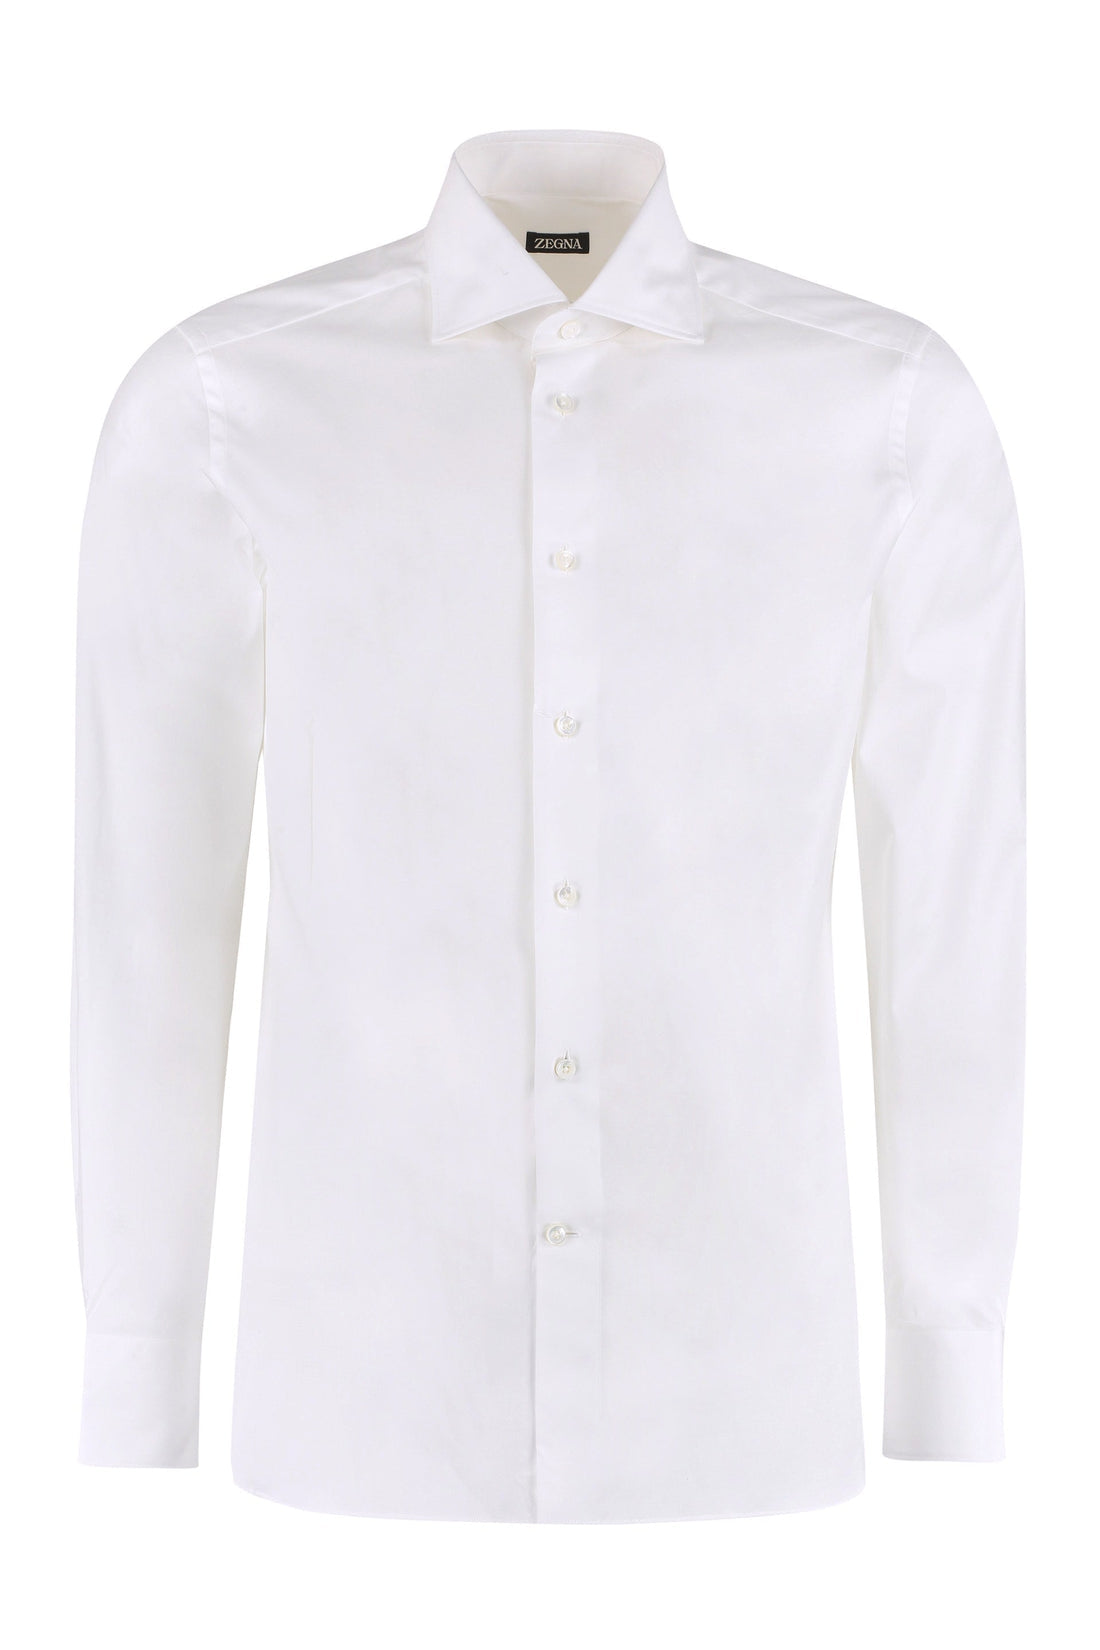 Zegna-OUTLET-SALE-Cotton shirt-ARCHIVIST